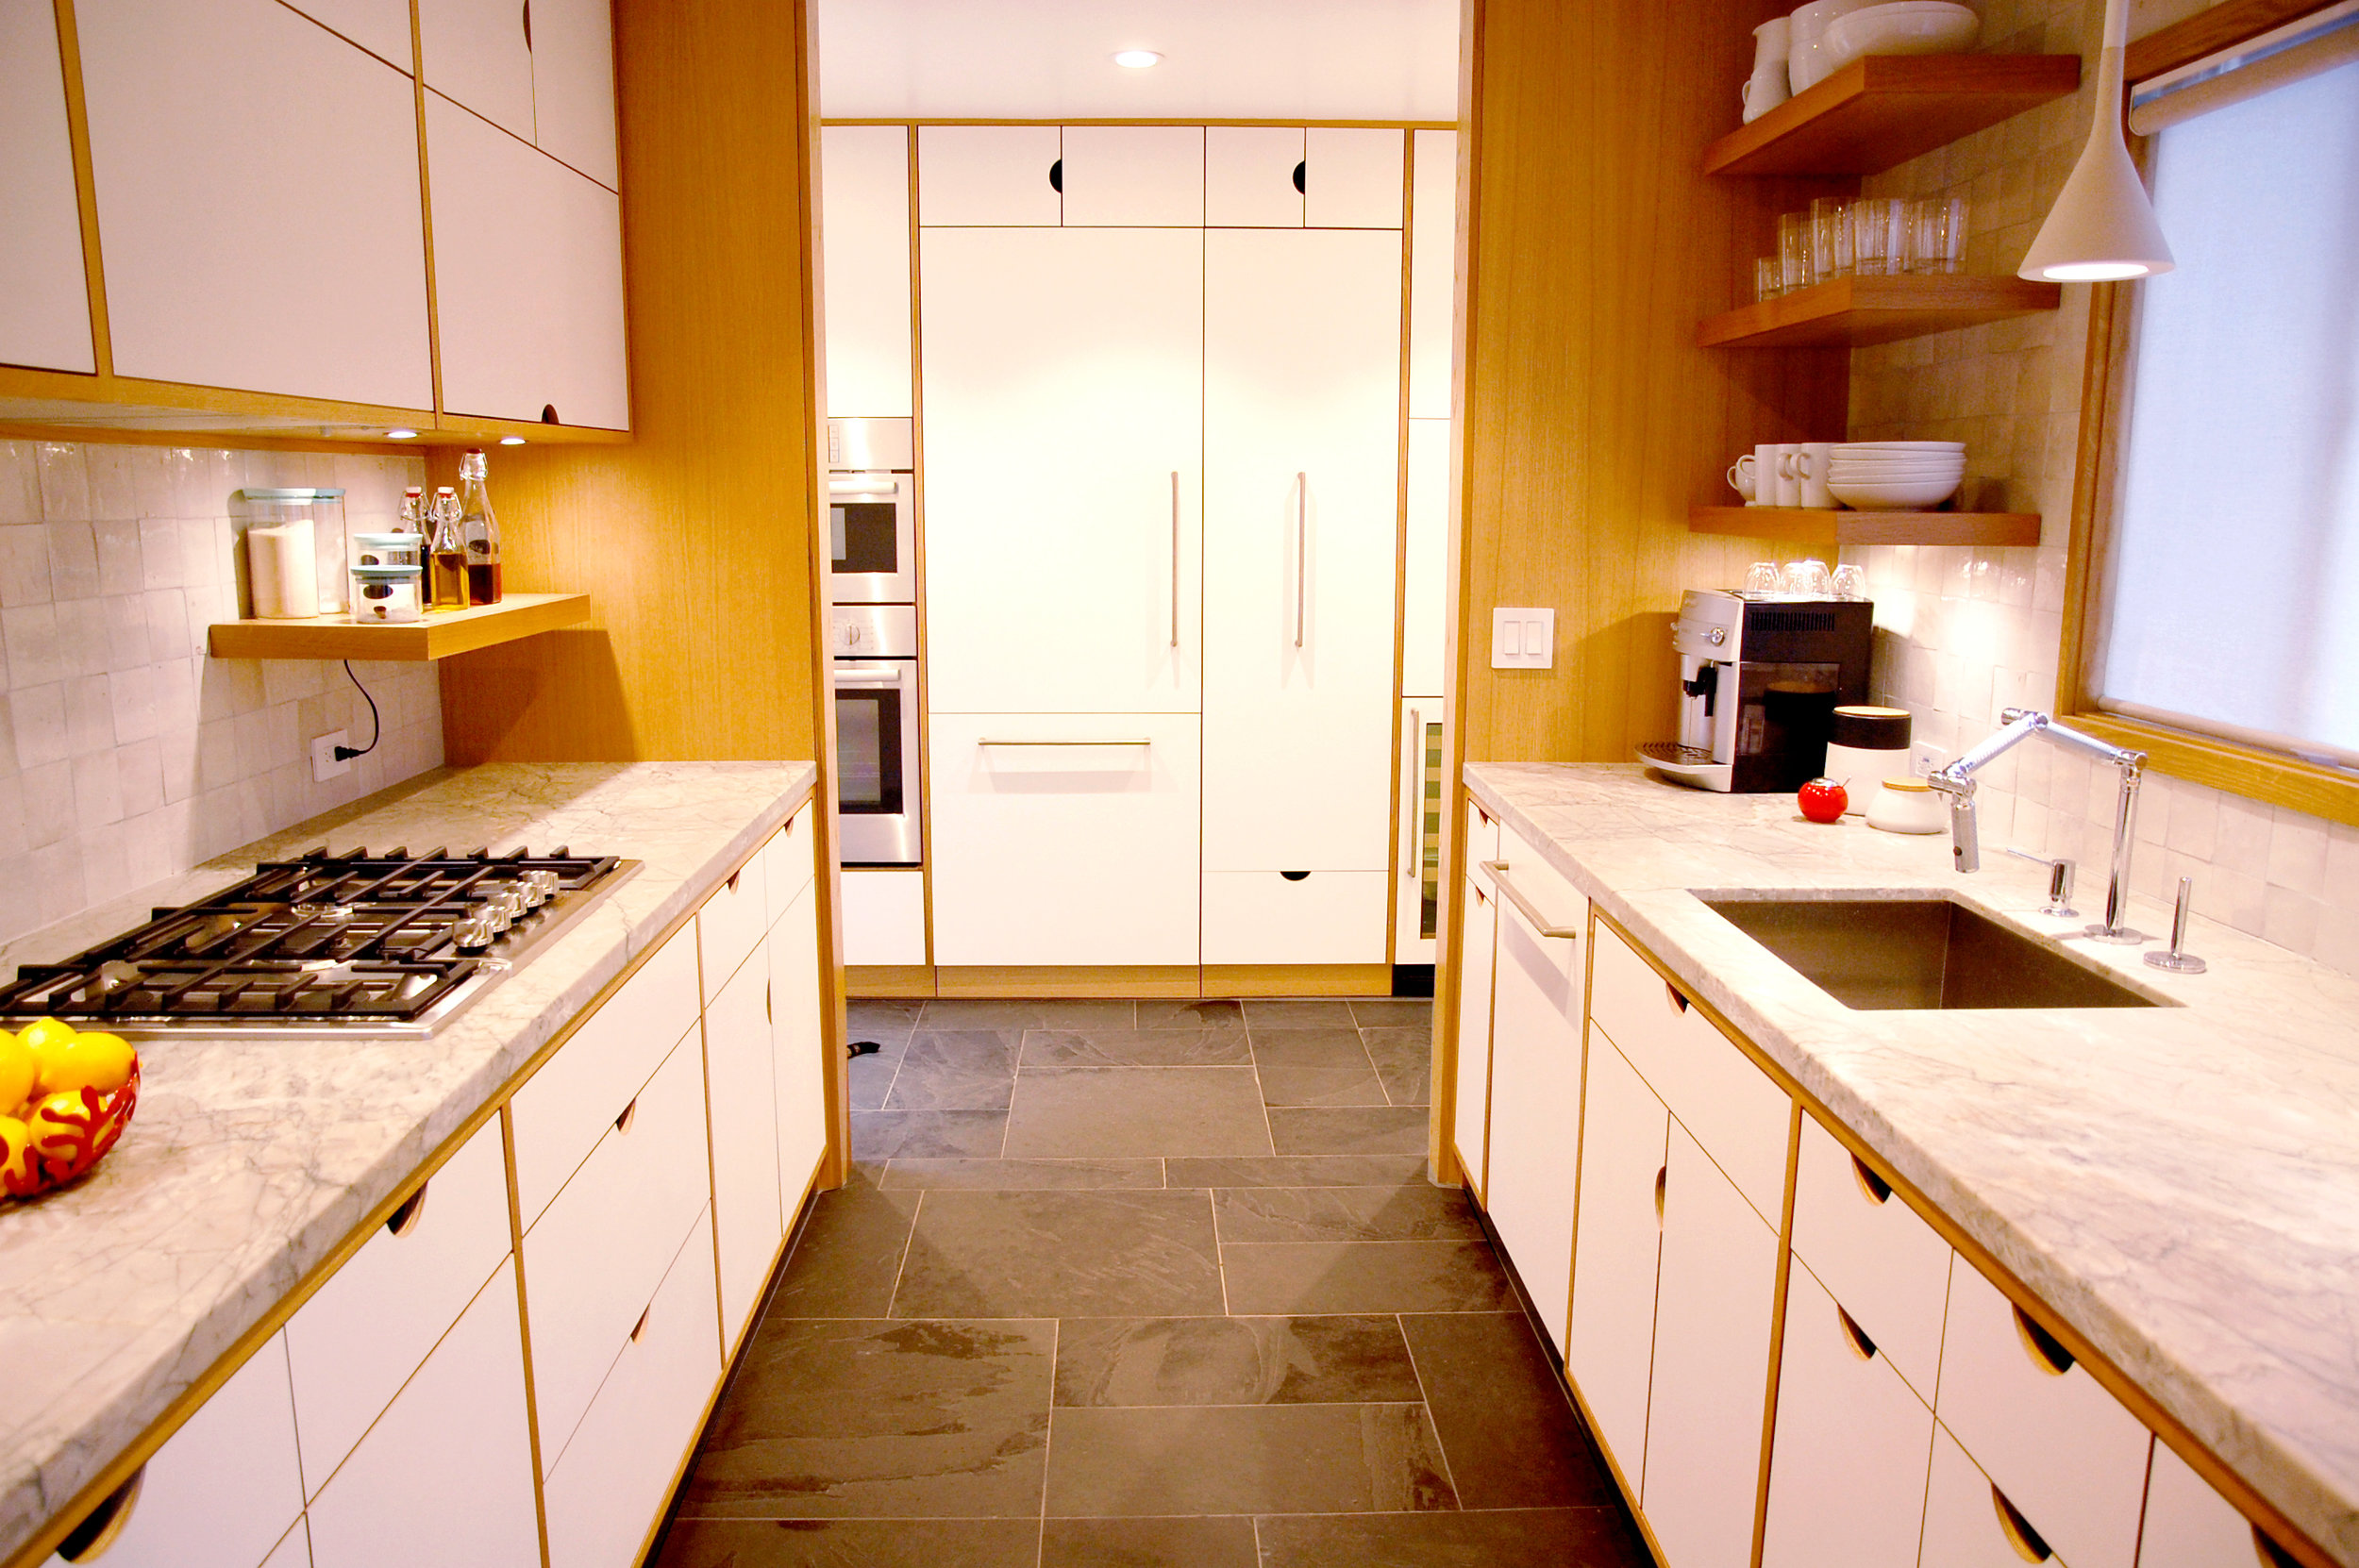 kitchen cabinets.jpg